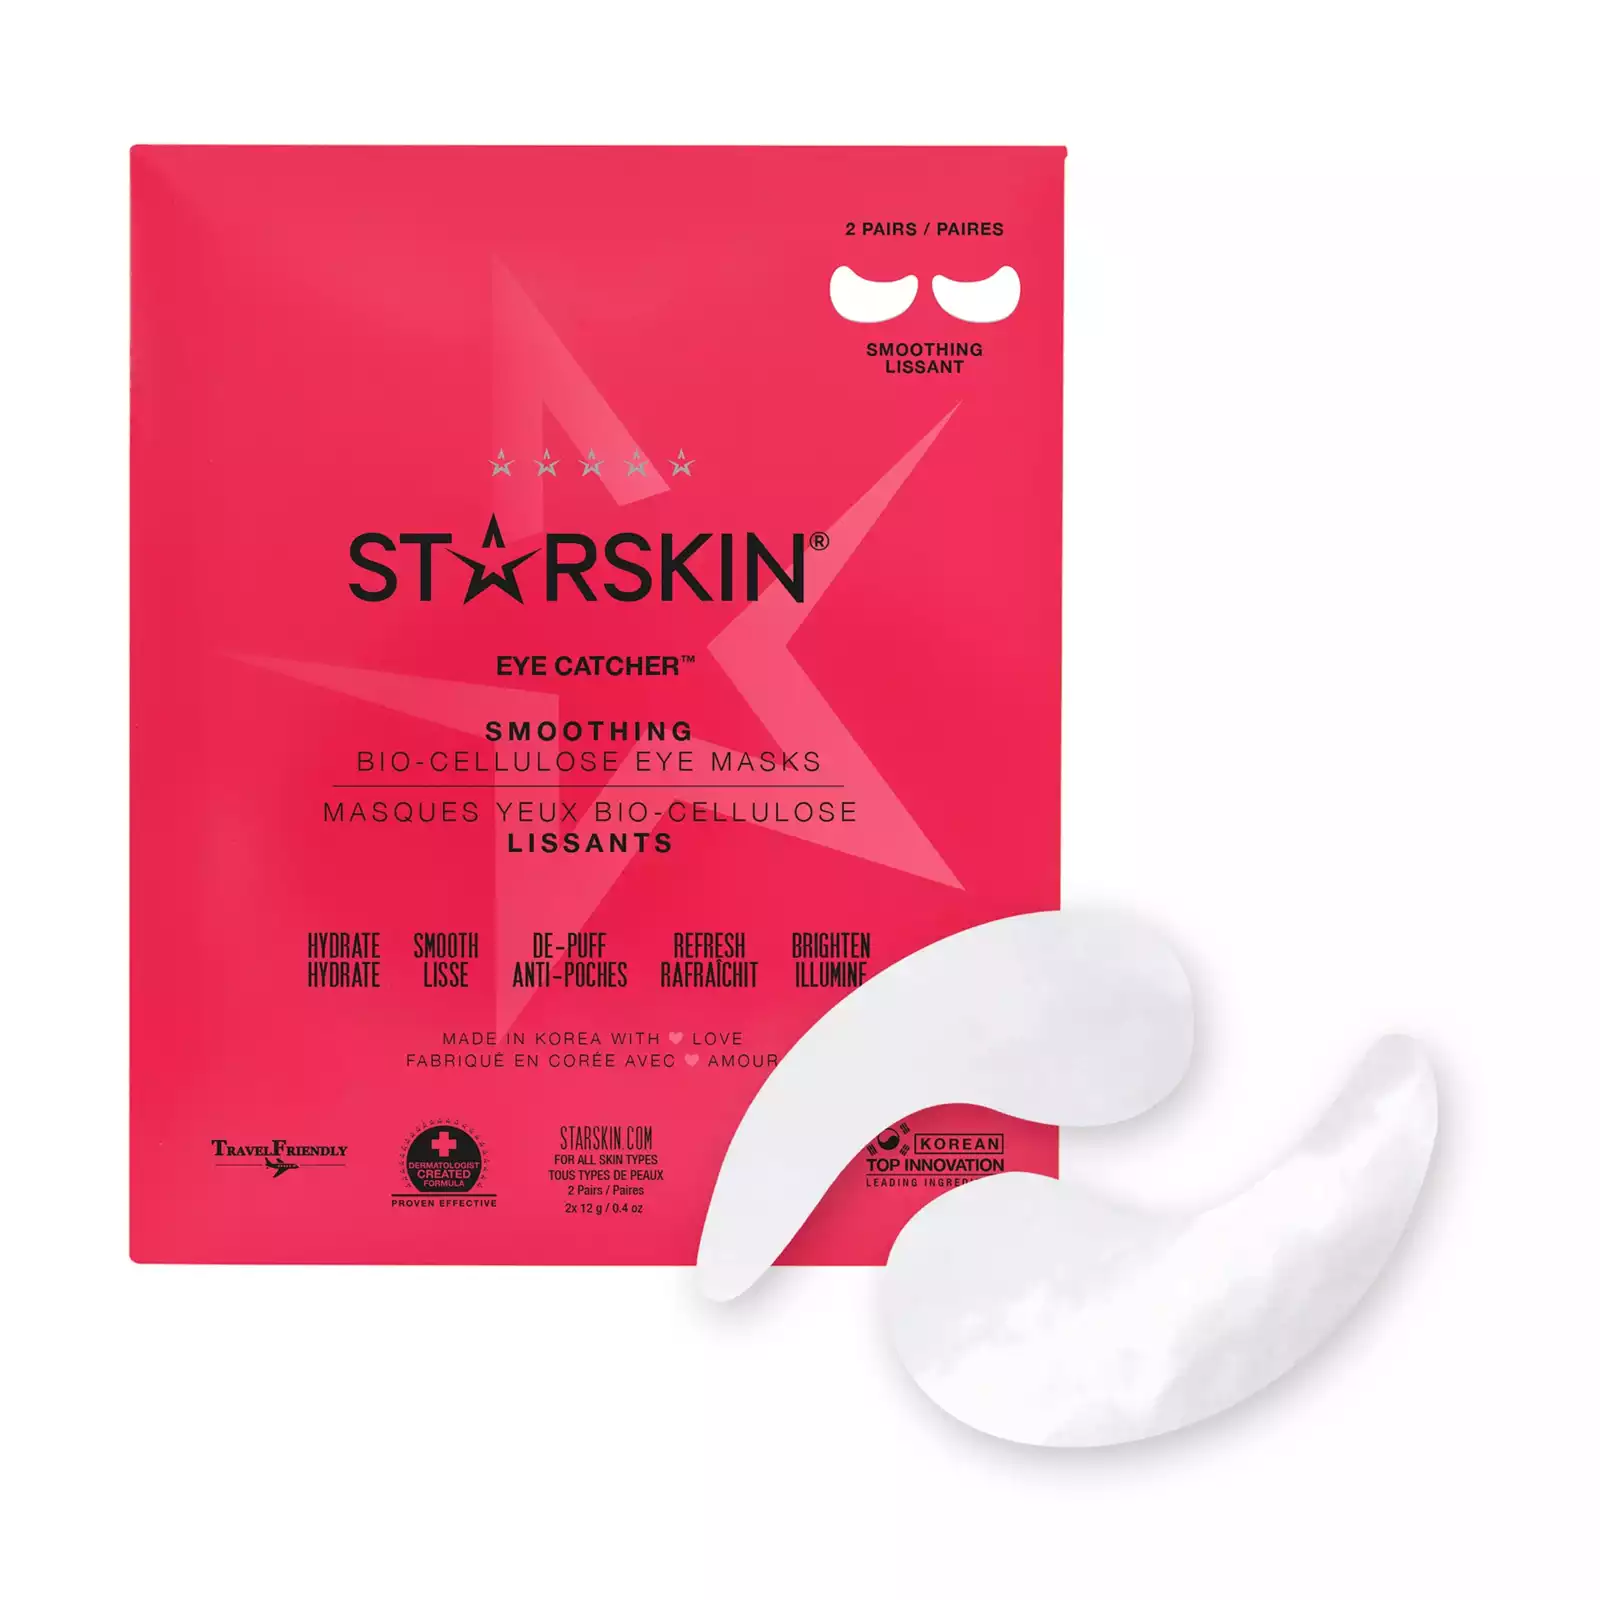 STARSKIN – Eye Catcher